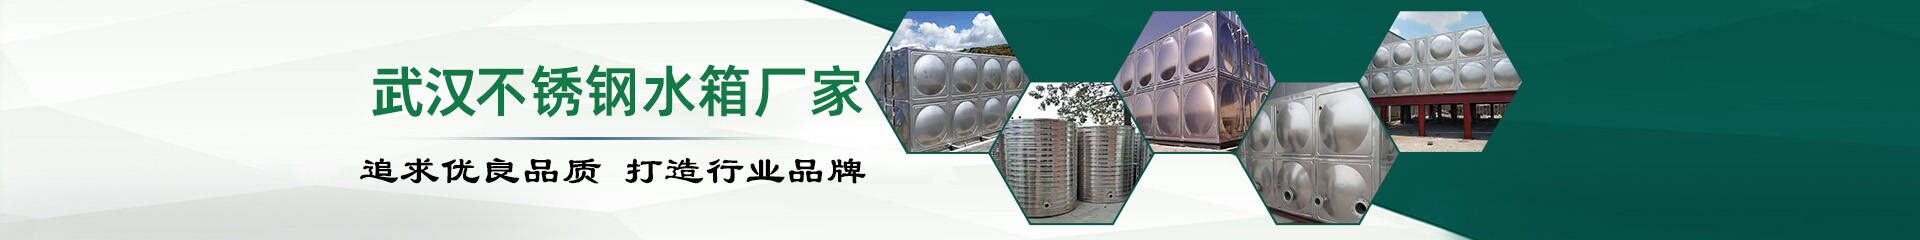 箱泵一体生活水箱_武汉不锈钢水箱厂家联系方式